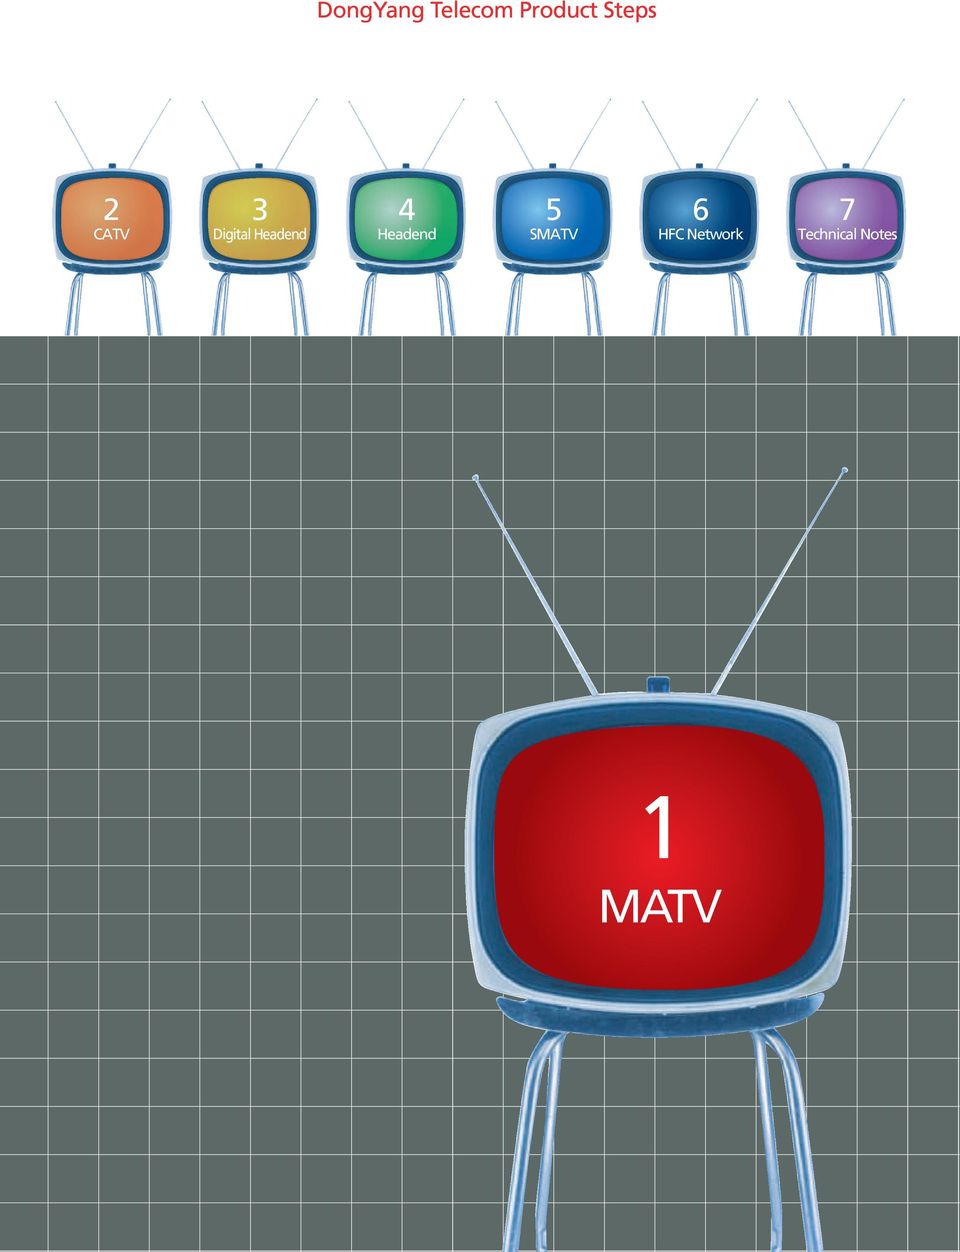 SMATV 6 HFC Network